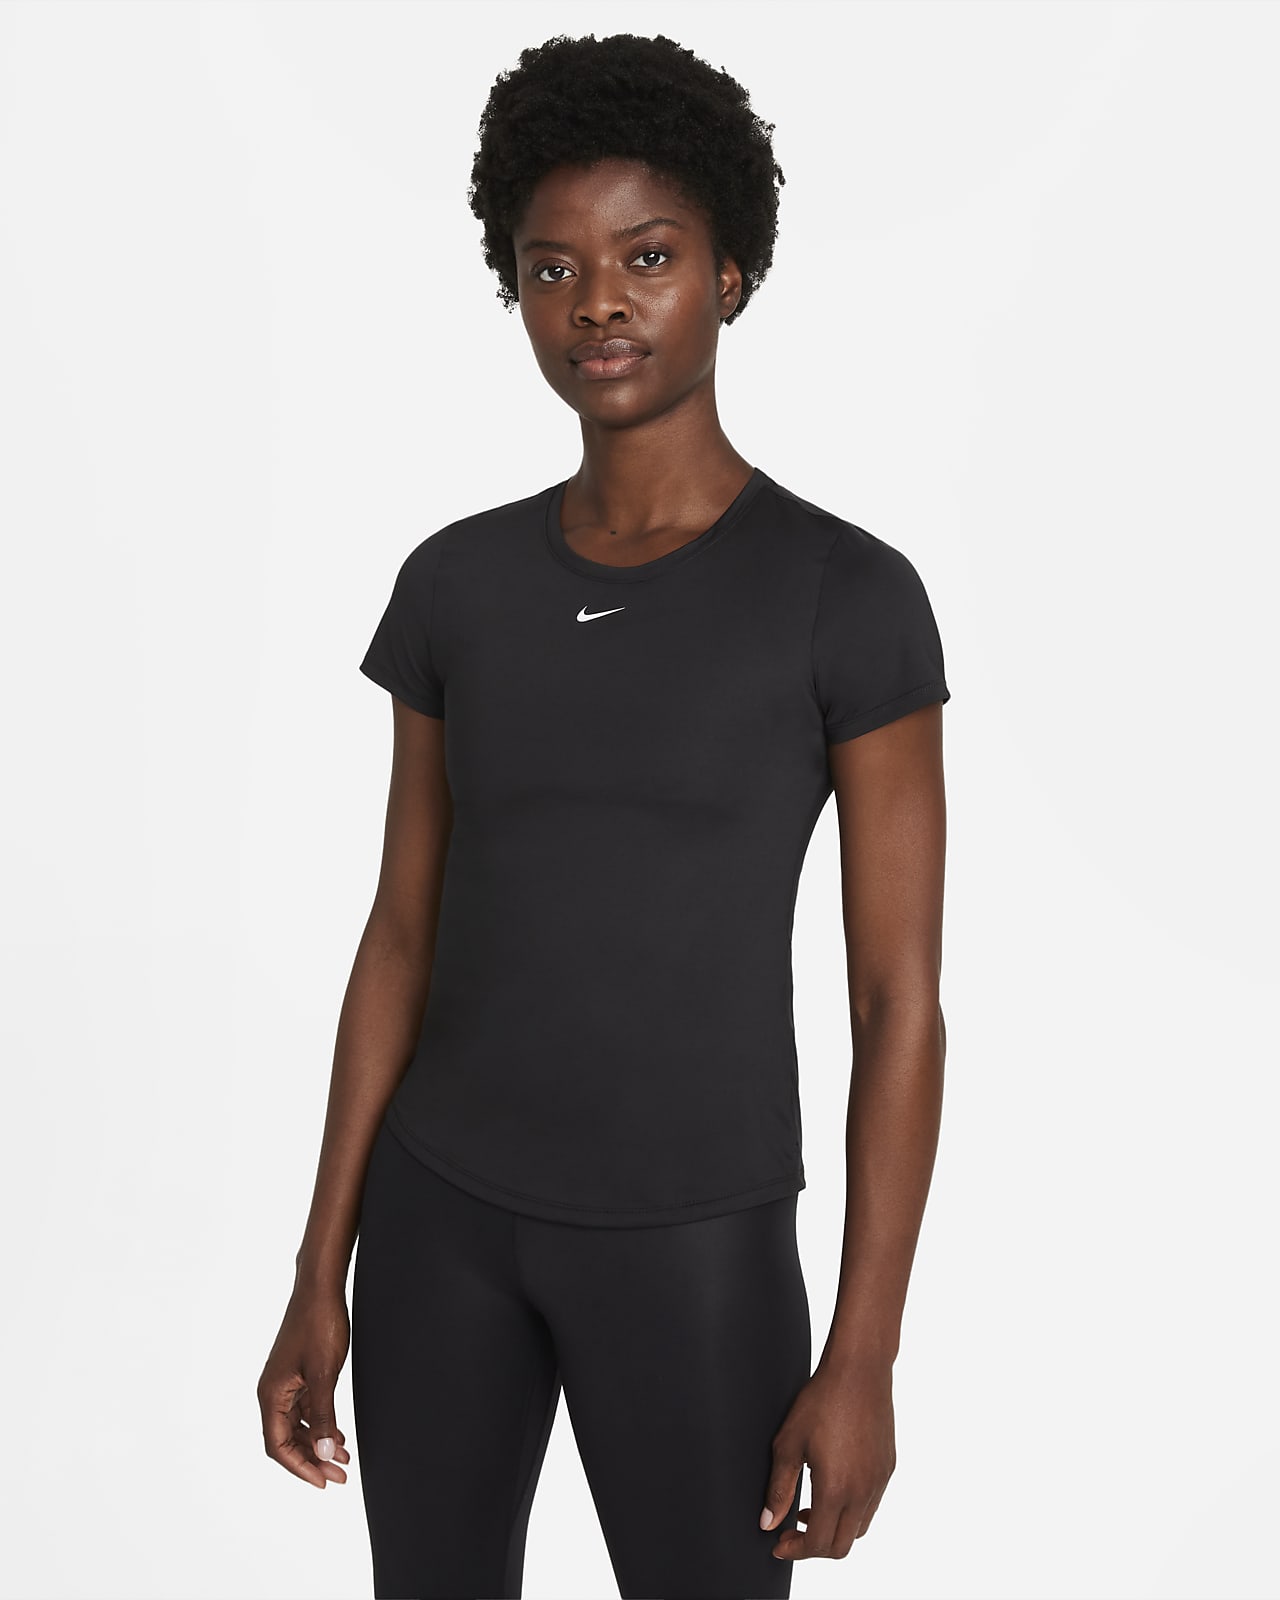 Playera de manga corta y ajuste slim para mujer Nike Dri-FIT One